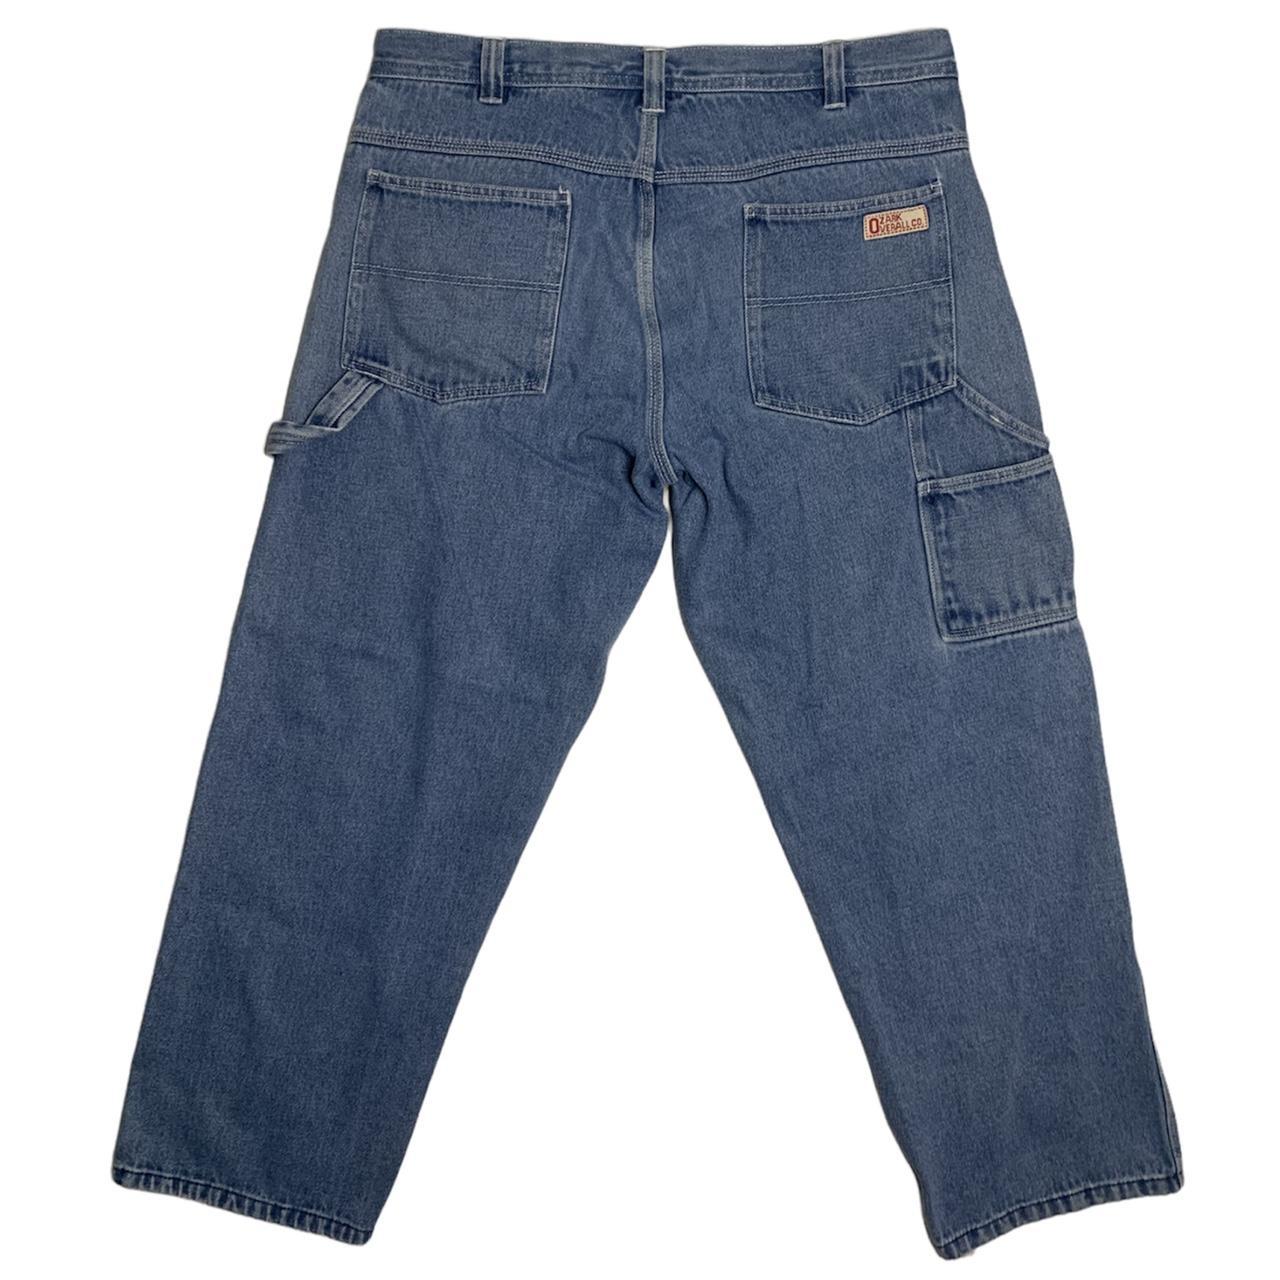 men’s vintage 90s style blue jeans / carpenter pants... - Depop